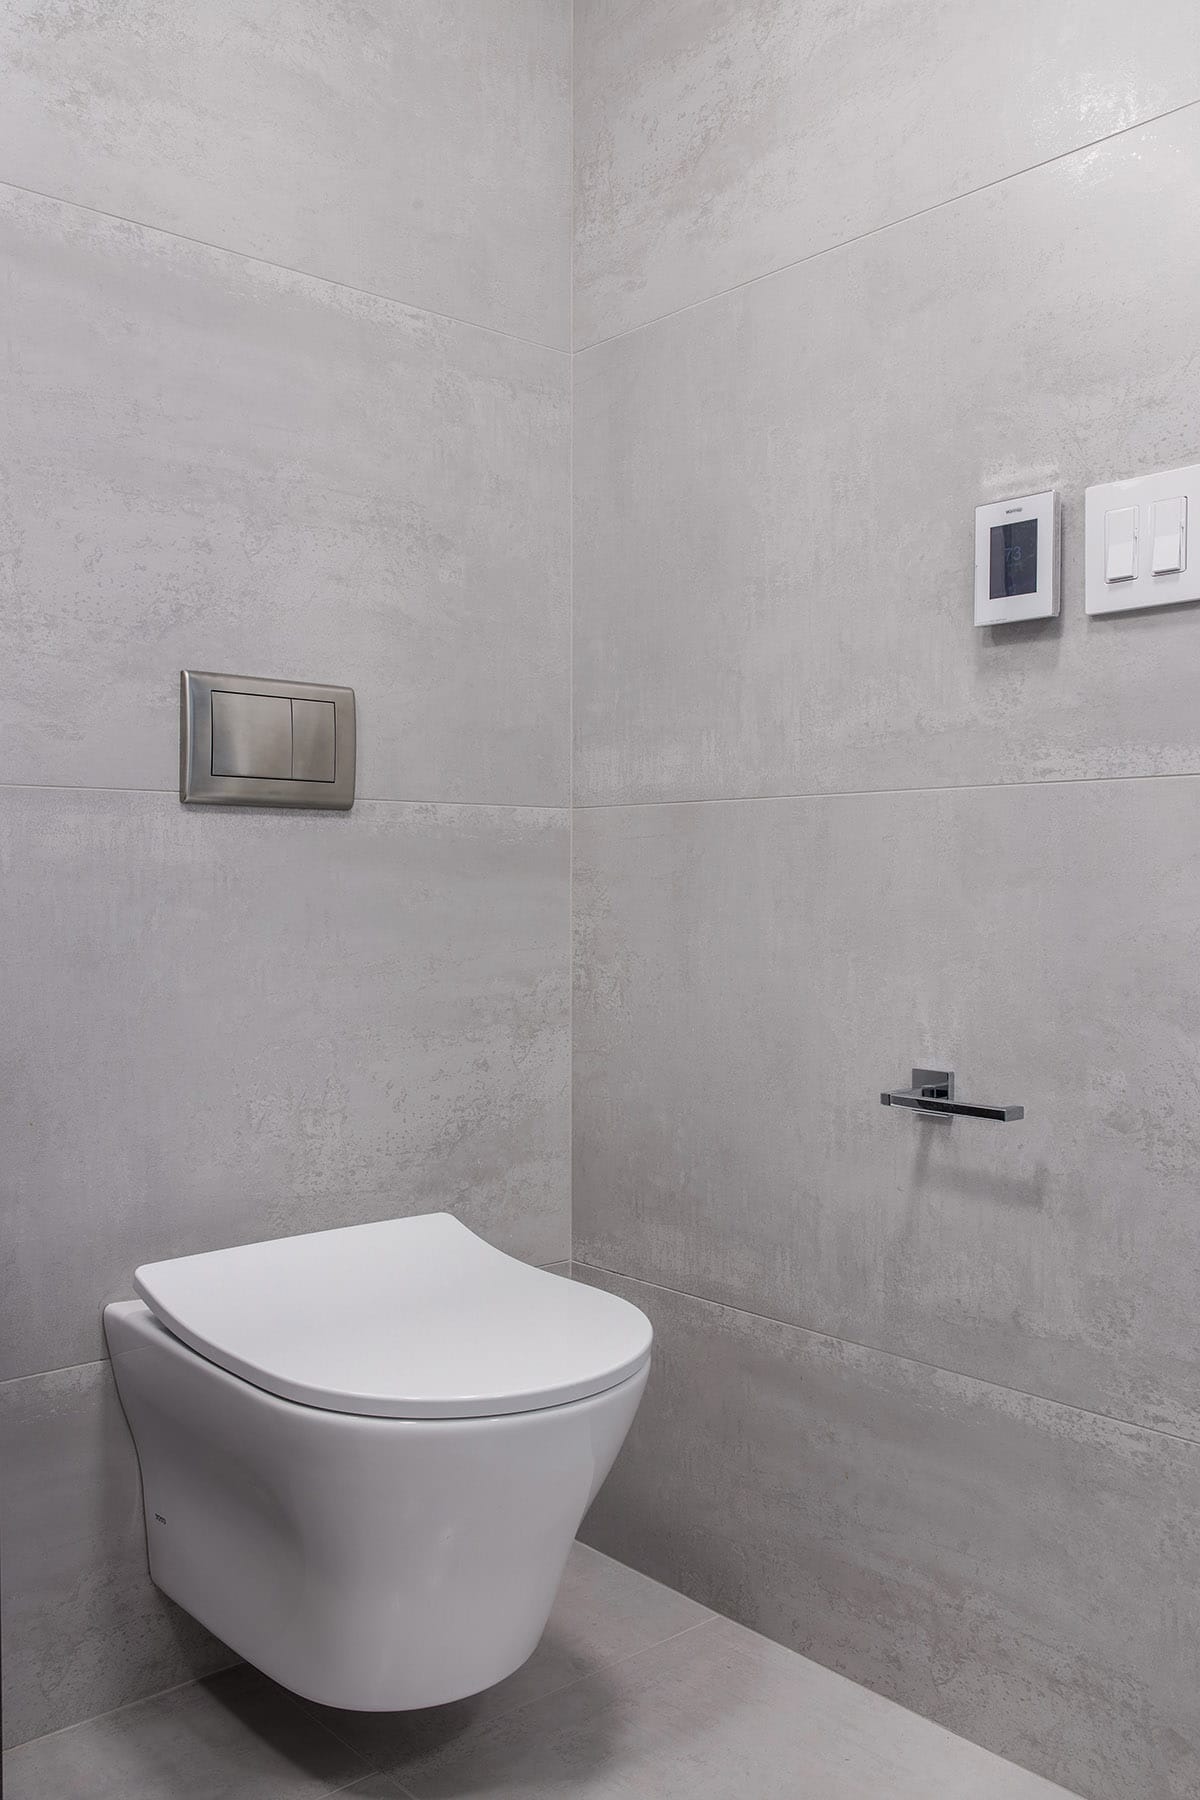 Porcelain Concrete Bathroom Tile